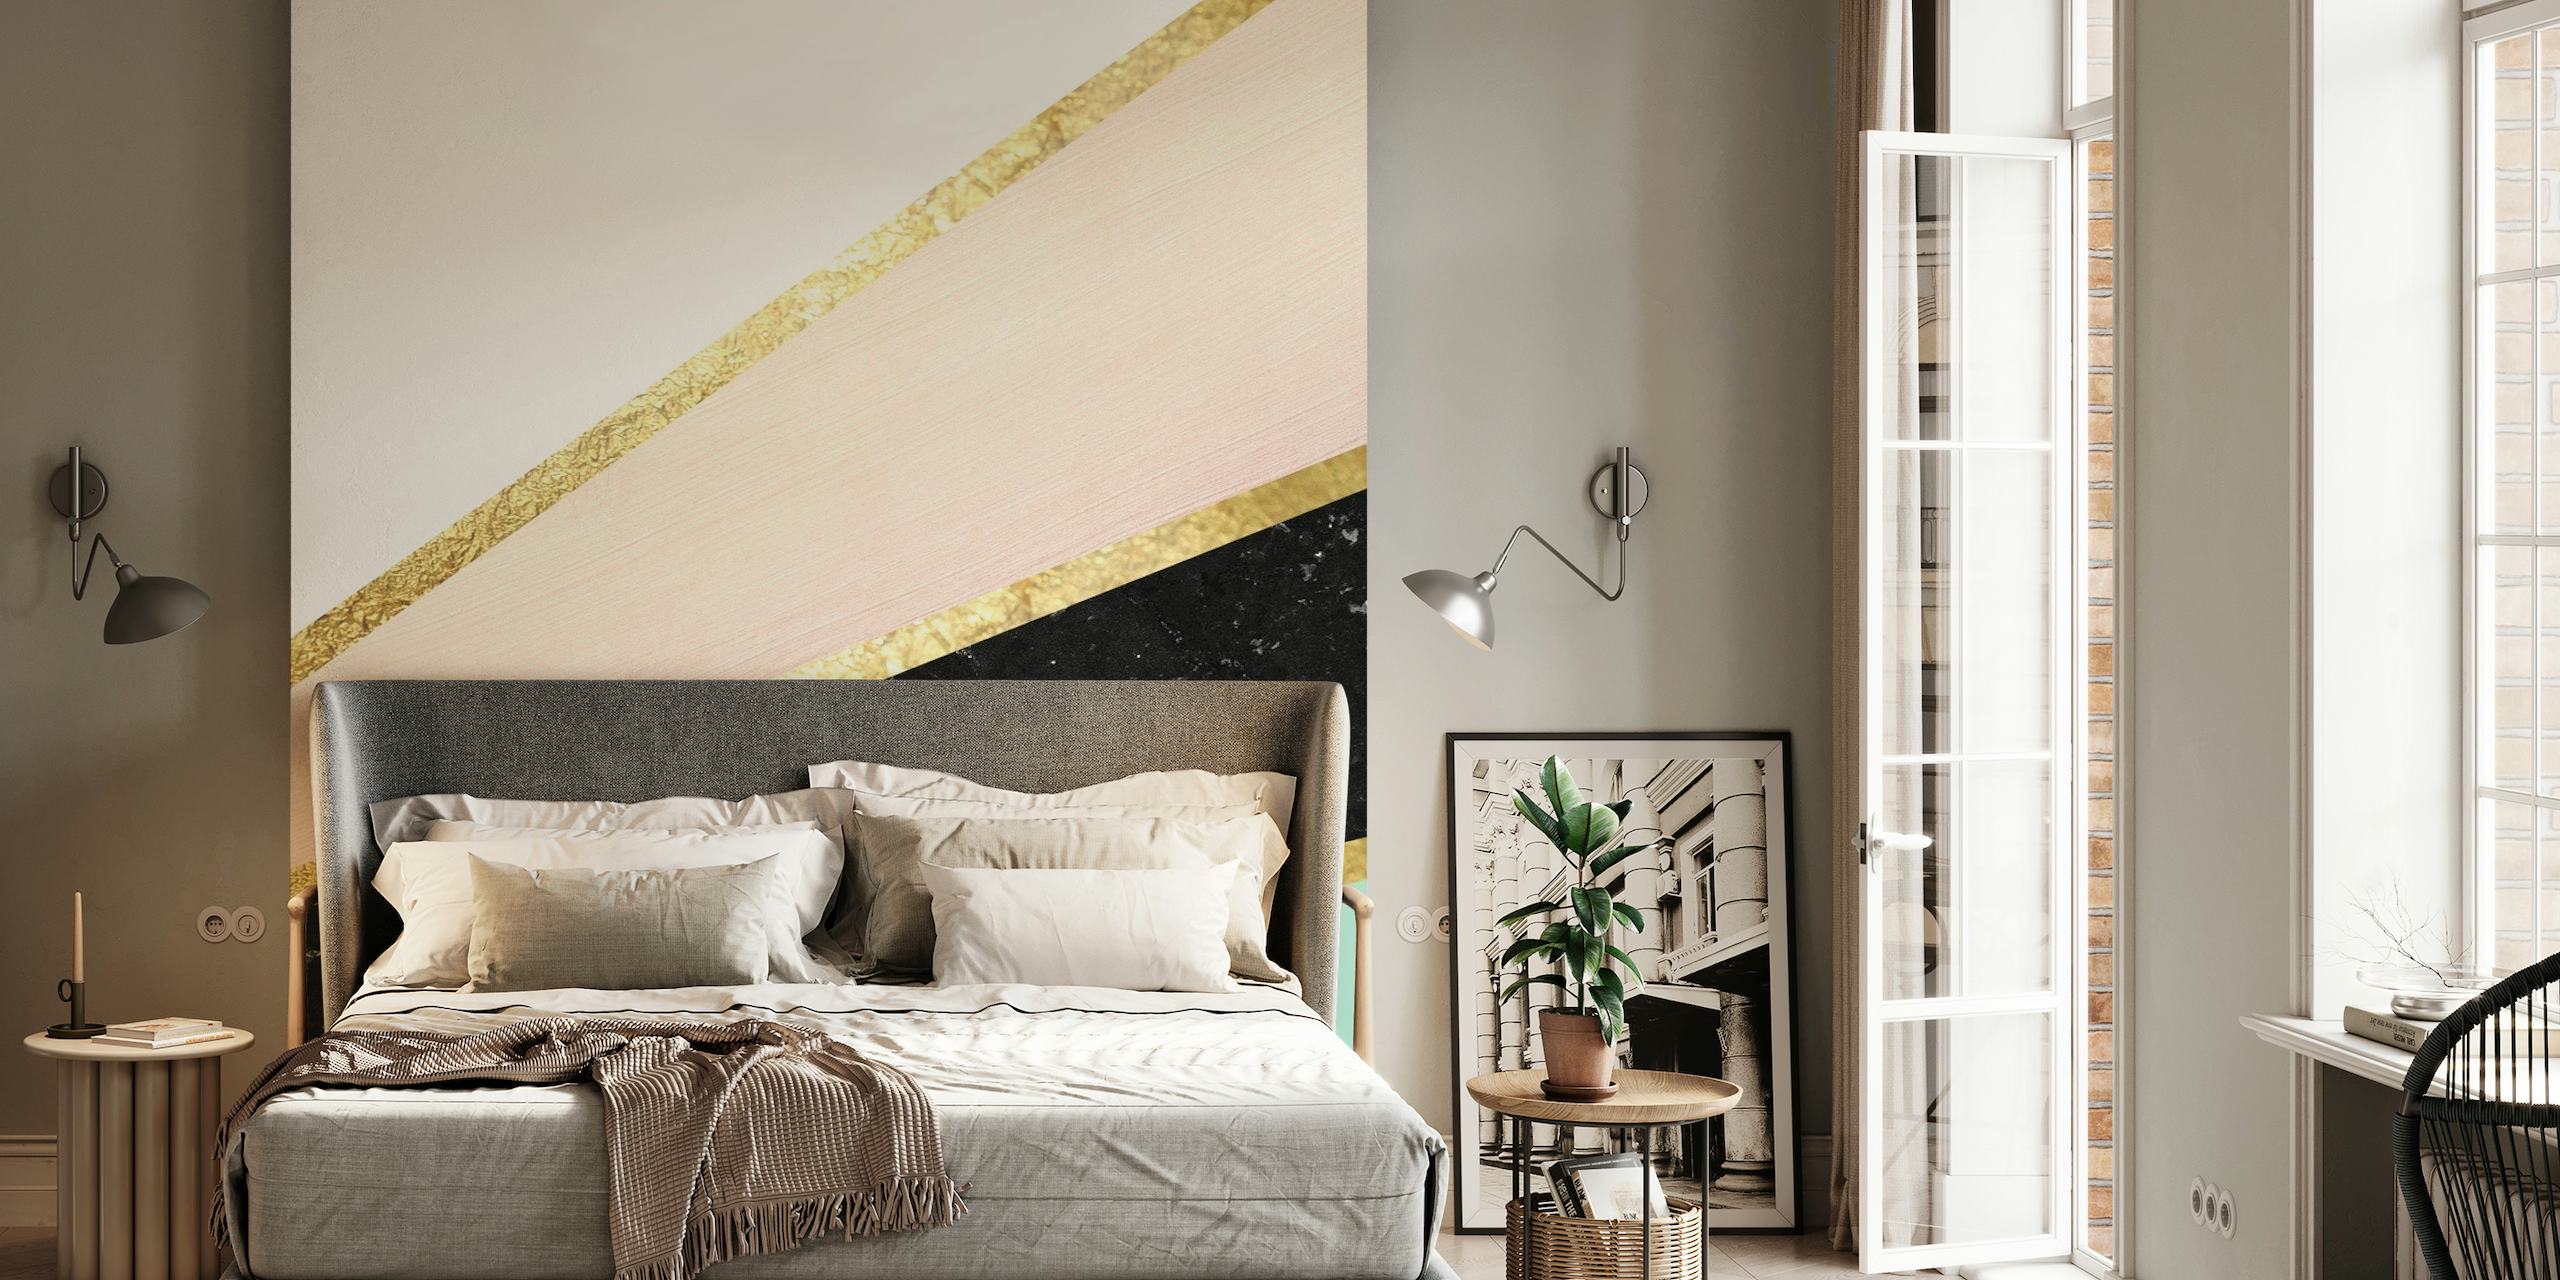 Elegante murale in marmo color menta, cipria e nero con accenti dorati